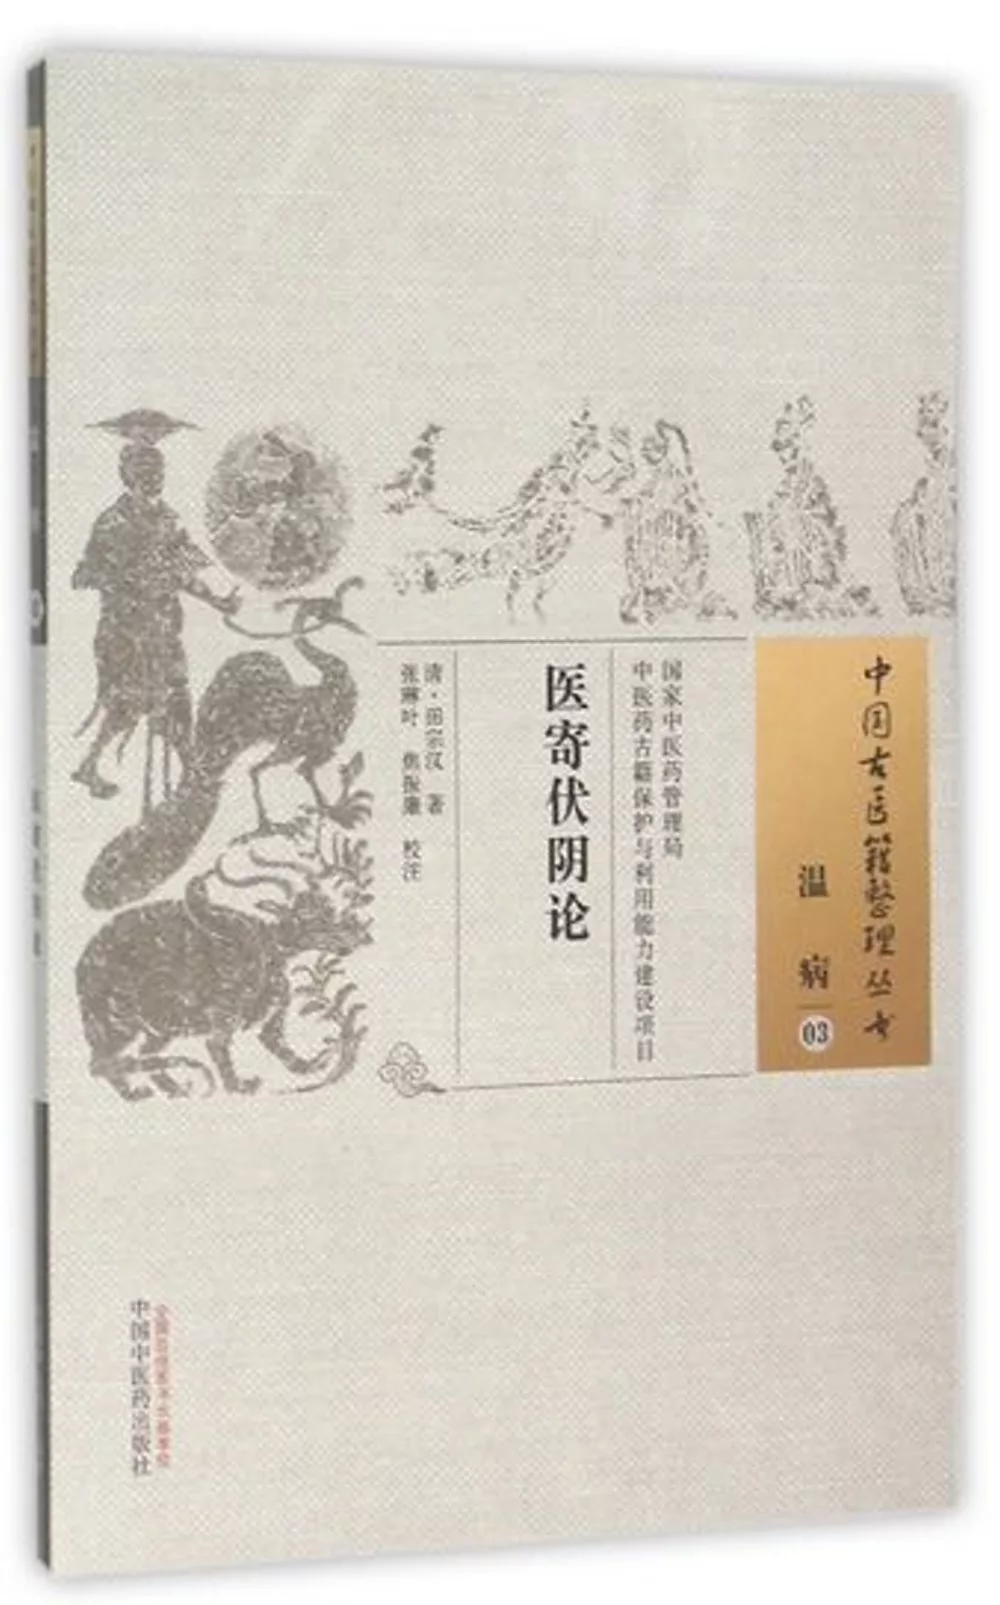 中國古醫籍整理叢書：溫病（03），醫寄伏陰論